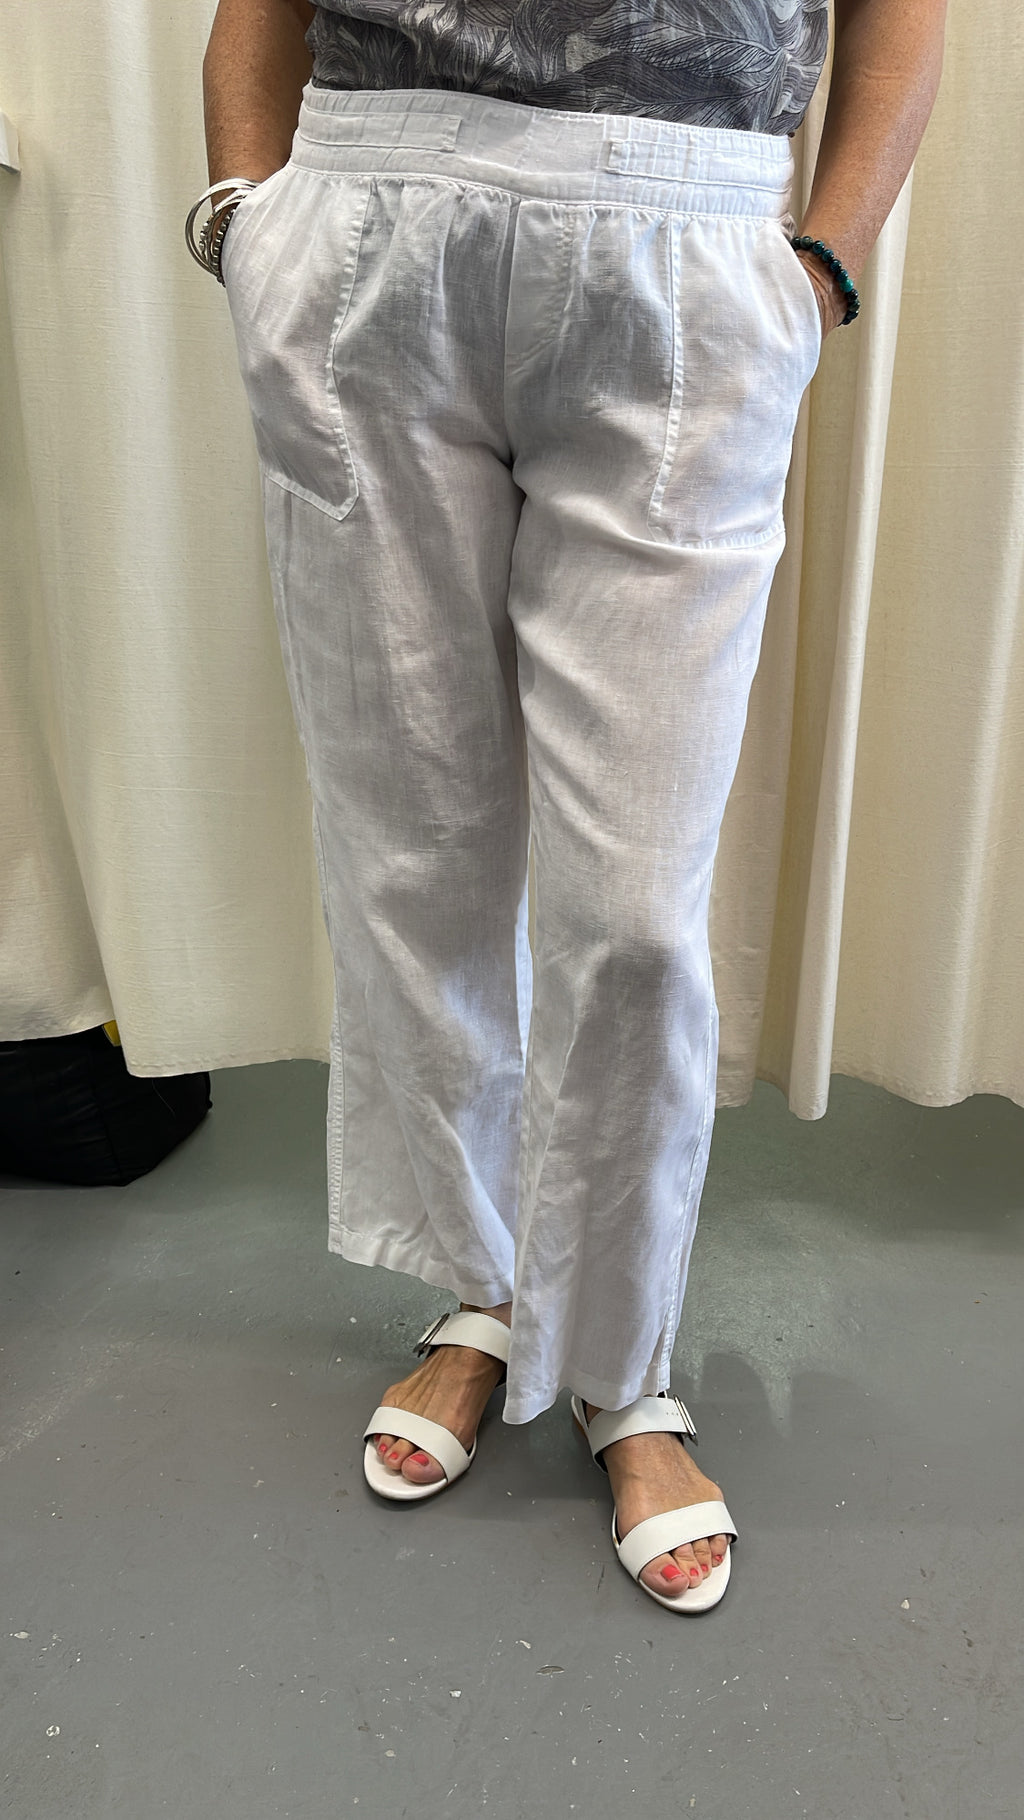 Zest White Linen Pants Sz 10